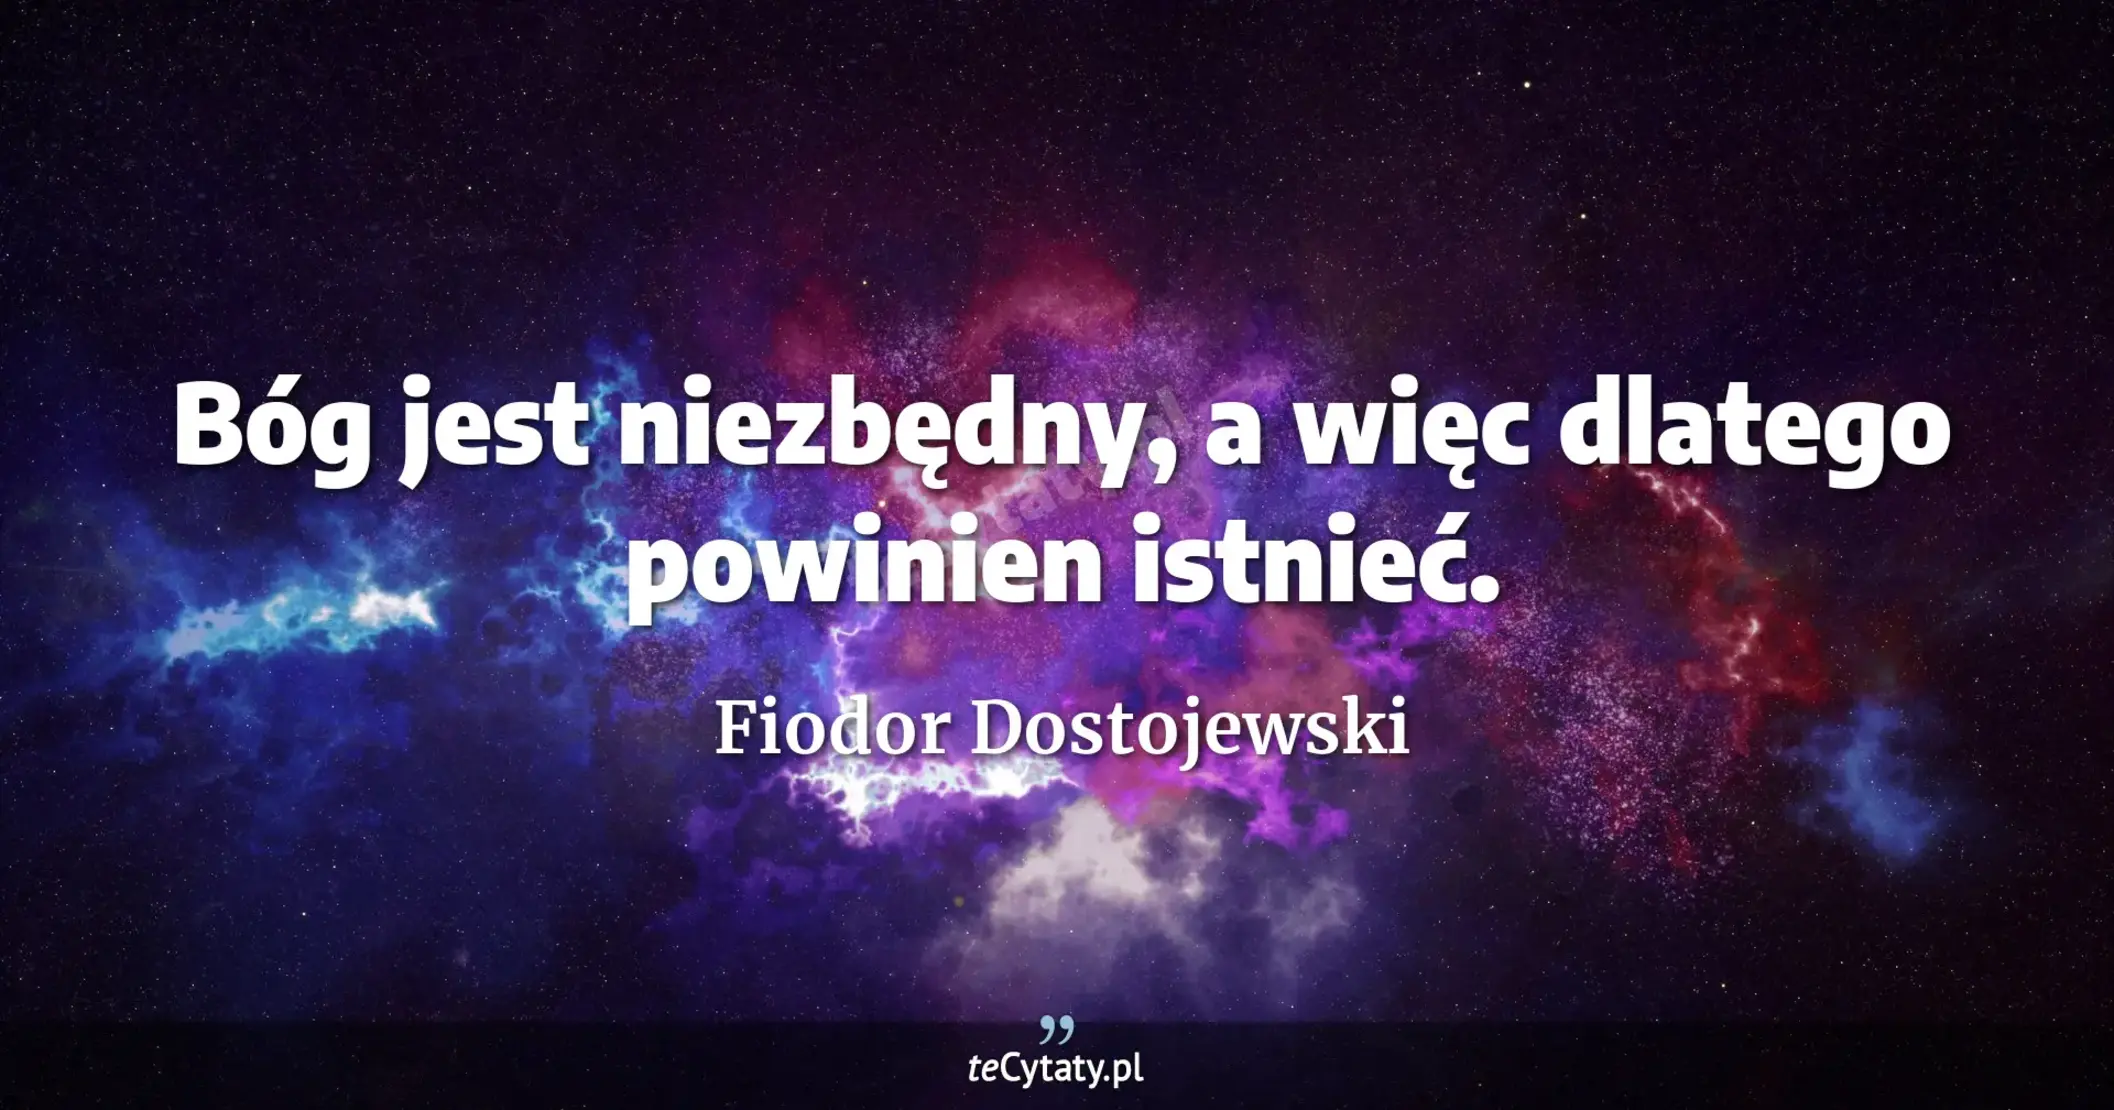 Bóg jest niezbędny, a więc dlatego powinien istnieć. - Fiodor Dostojewski